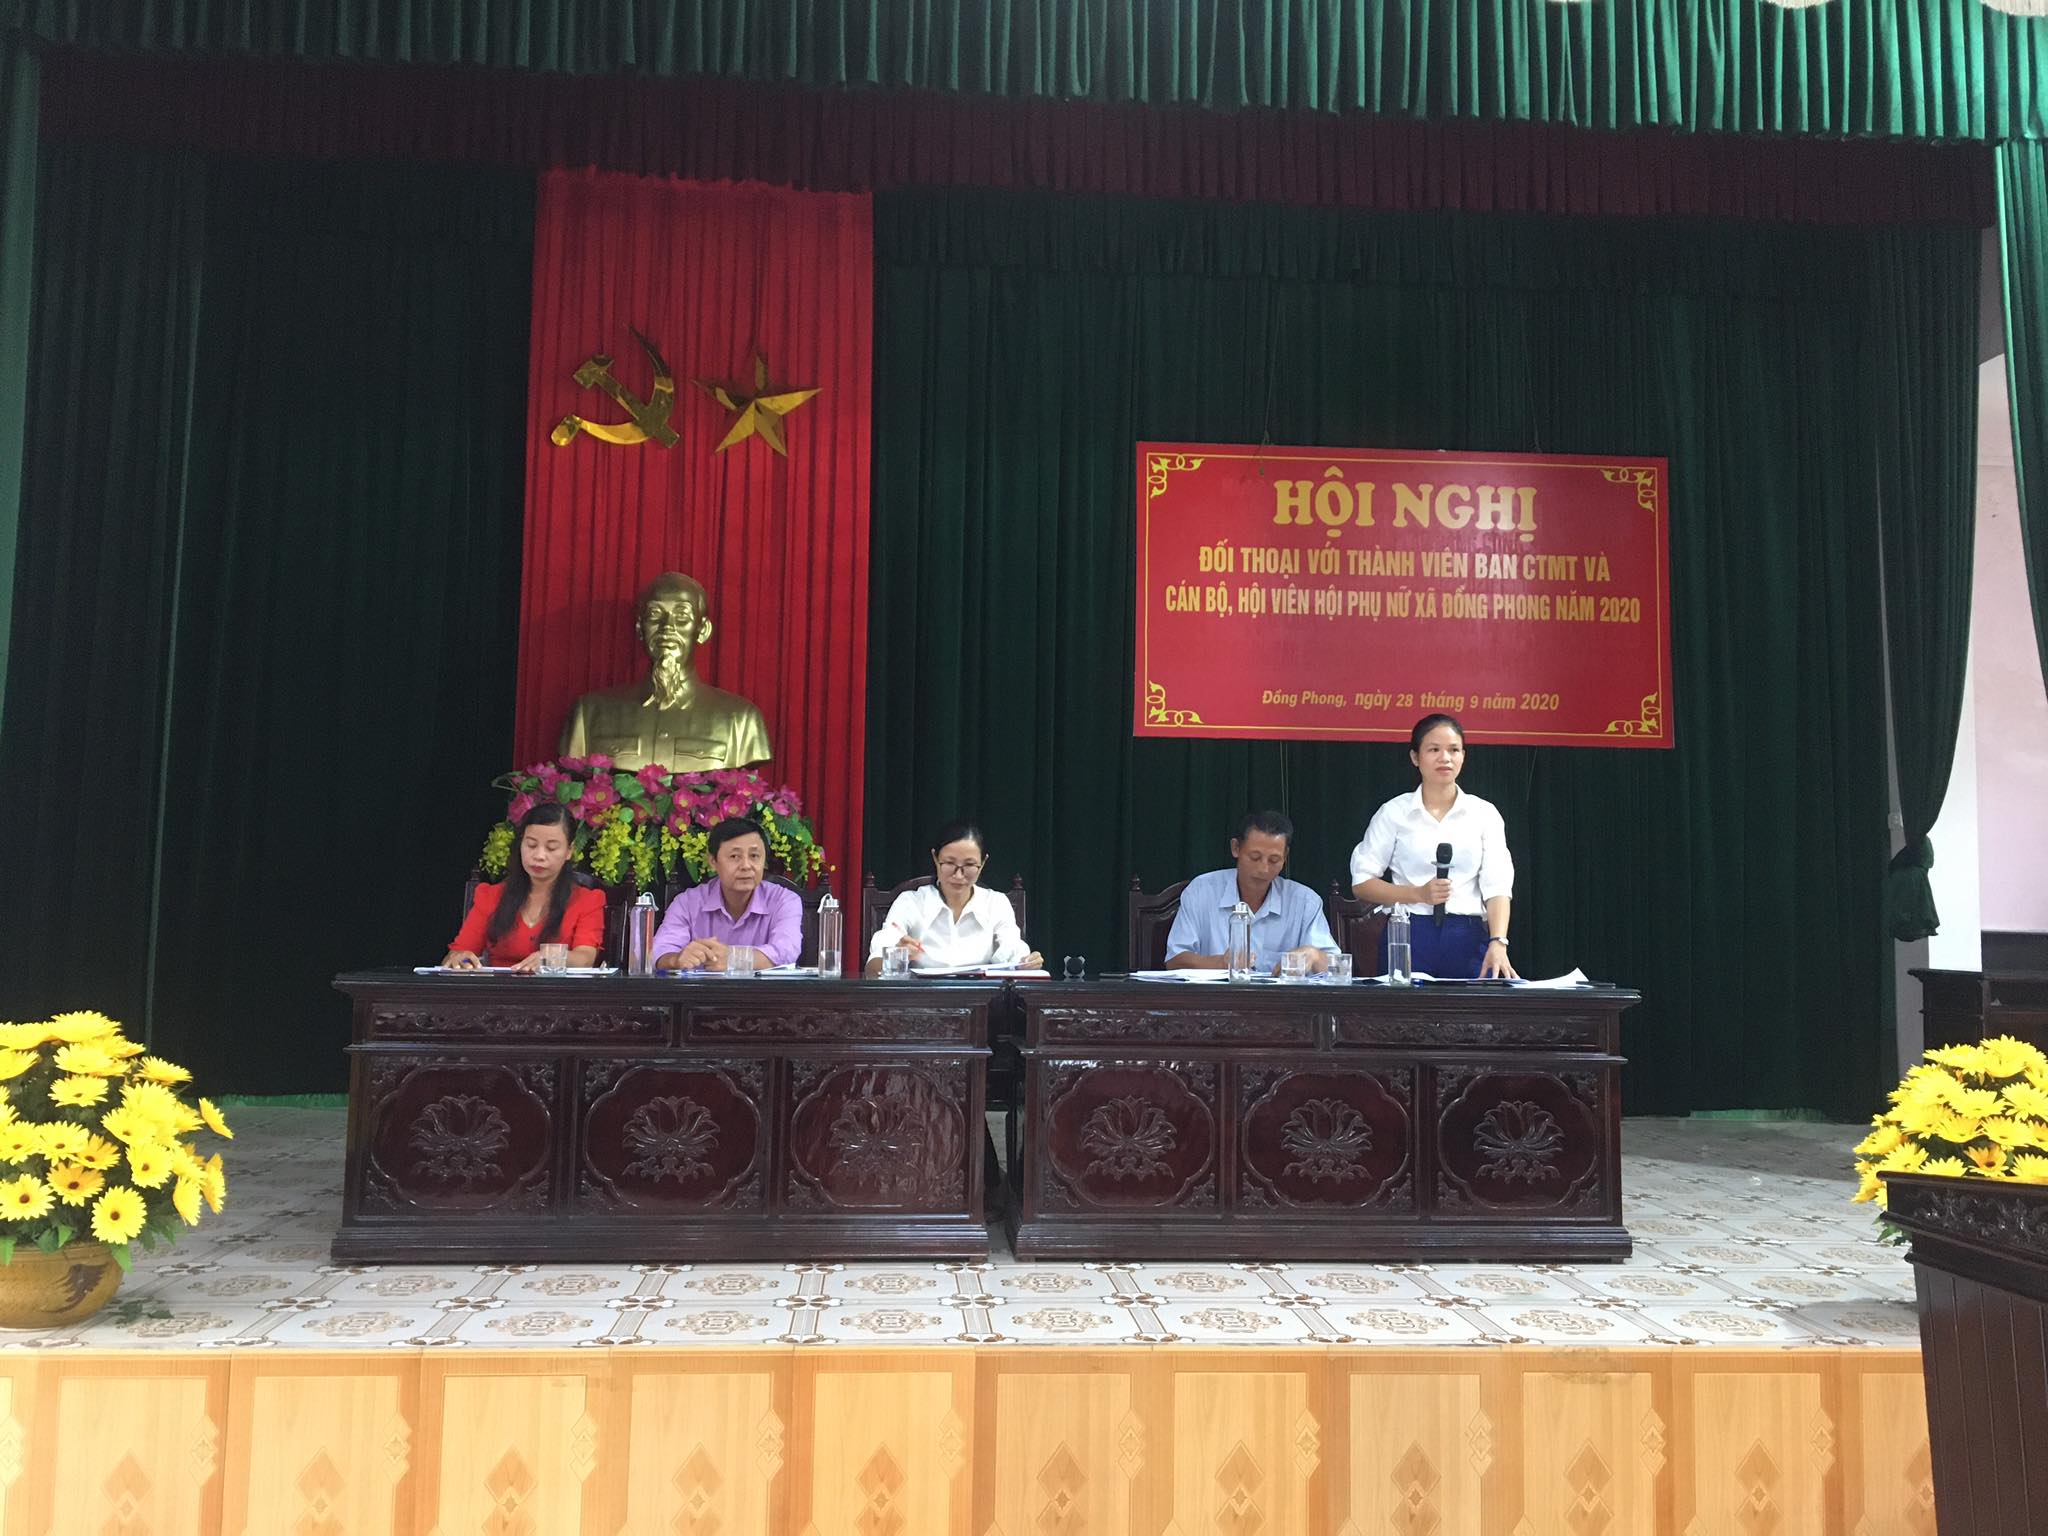 Hội Nghị đối thoại với thành viên Ban CTMT và cán bộ hội viên Phụ nữ xã Đồng Phong năm 2020